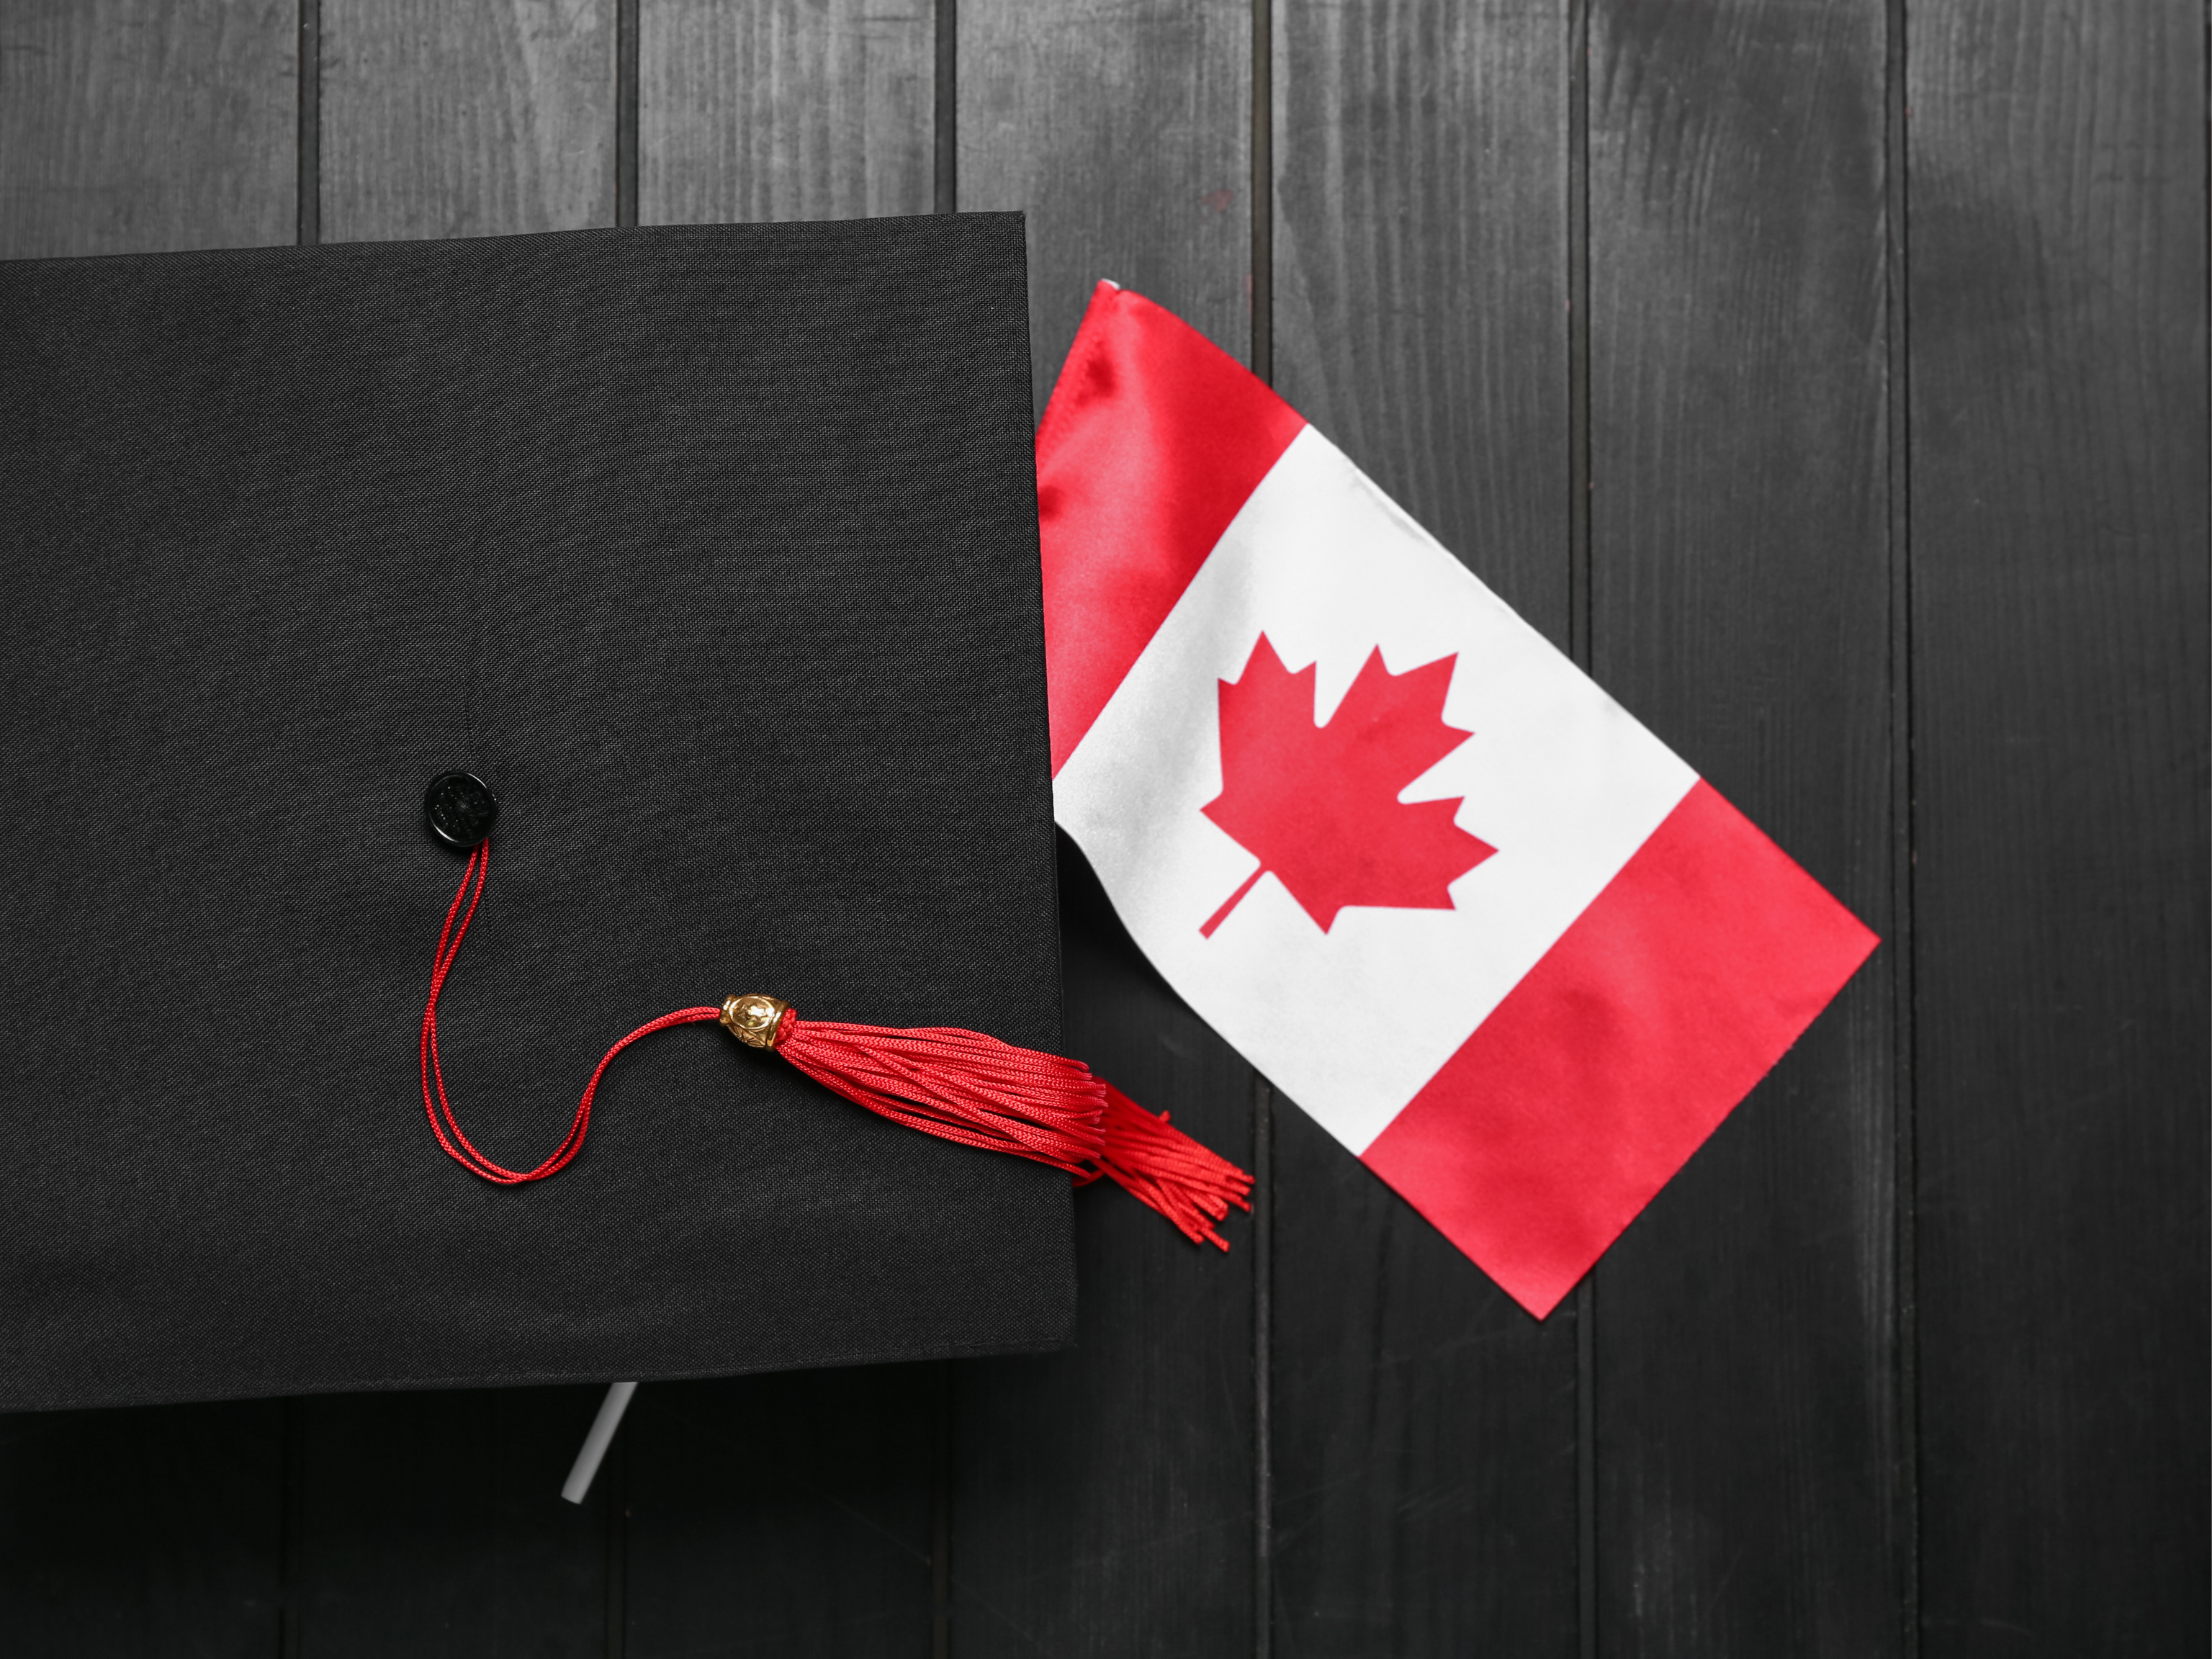 Estudar e trabalhar no Canadá continua a ser uma forma viável para aqueles que ainda não possuem perfil para imigrar direto